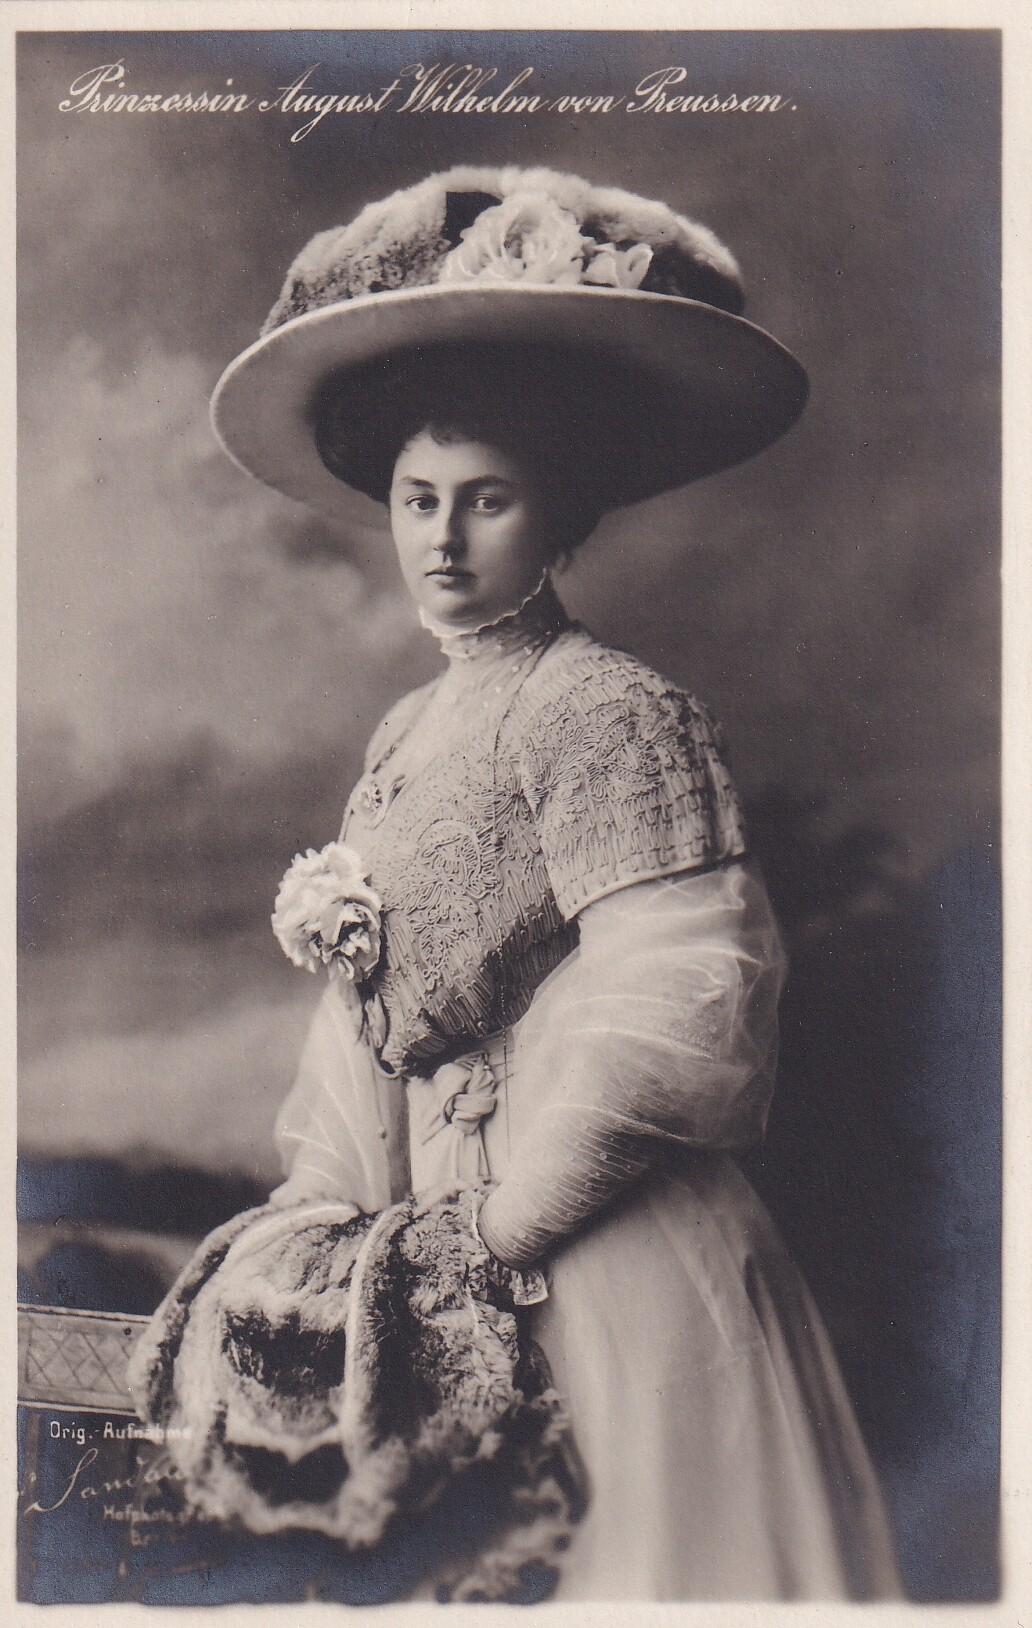 Bildpostkarte mit Foto der Prinzessin Alexandra Viktoria von Preußen, 1909 (Schloß Wernigerode GmbH RR-F)